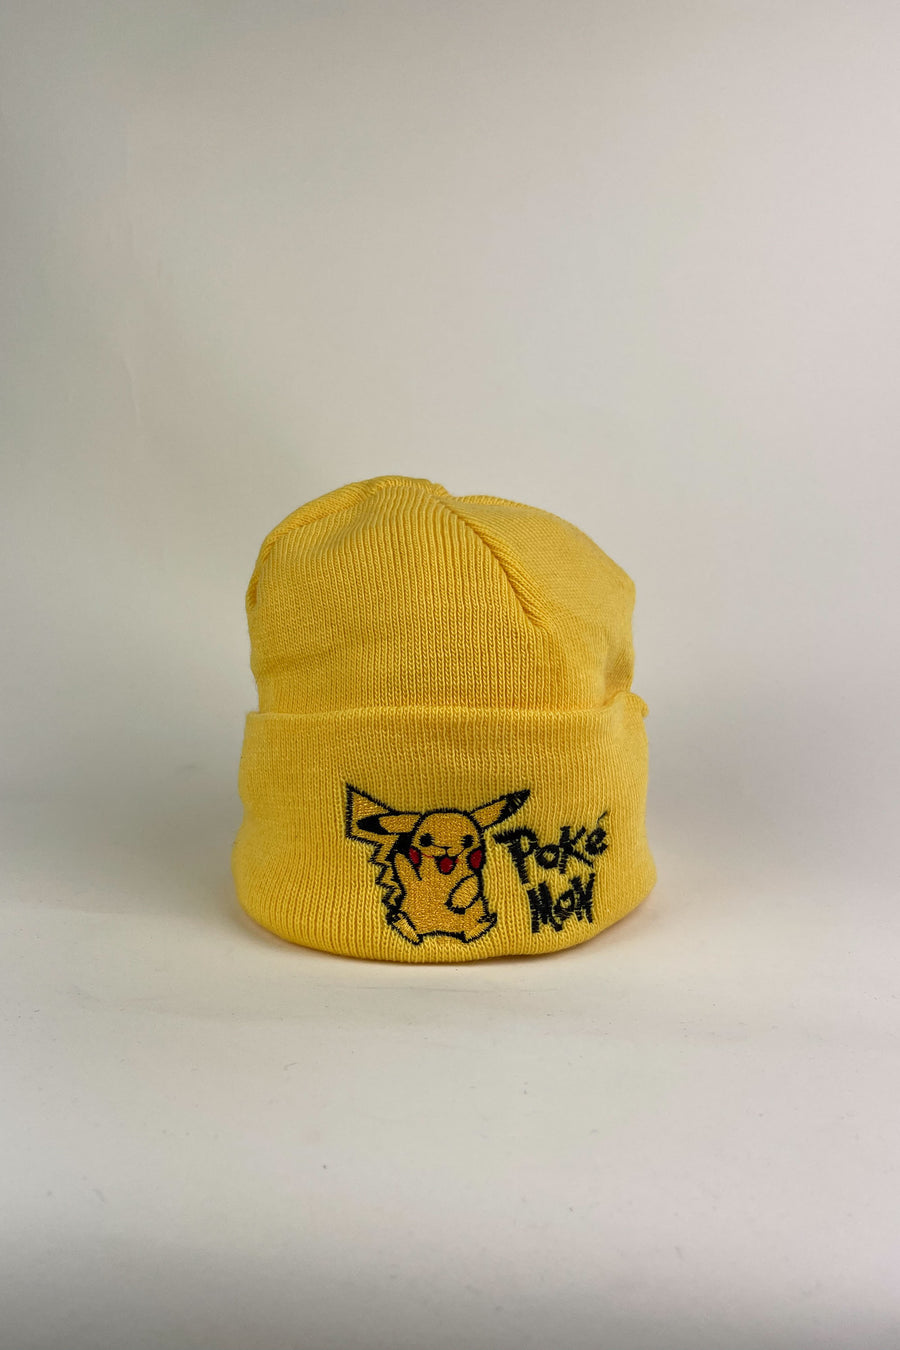 Vintage Deadstock Pokémon Beanie Yellow